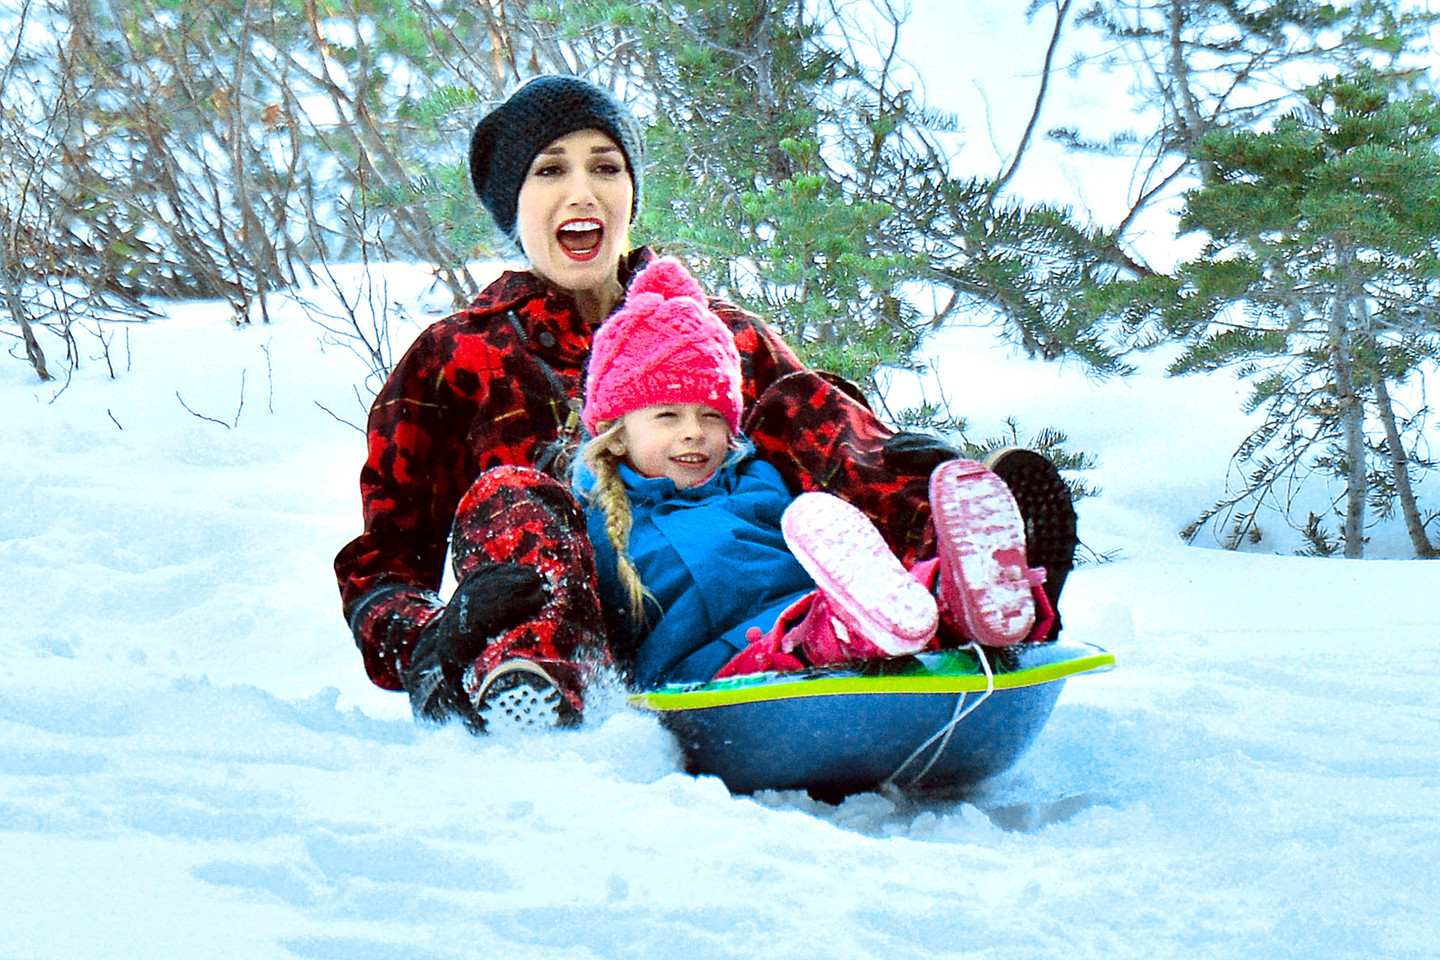 Gwen Stefani visuomet su vaikais traukia pasimėtyti sniego gniūžtėmis ar nuo kalno nusileisti rogutėmis.<br>ViDA Press nuotr.